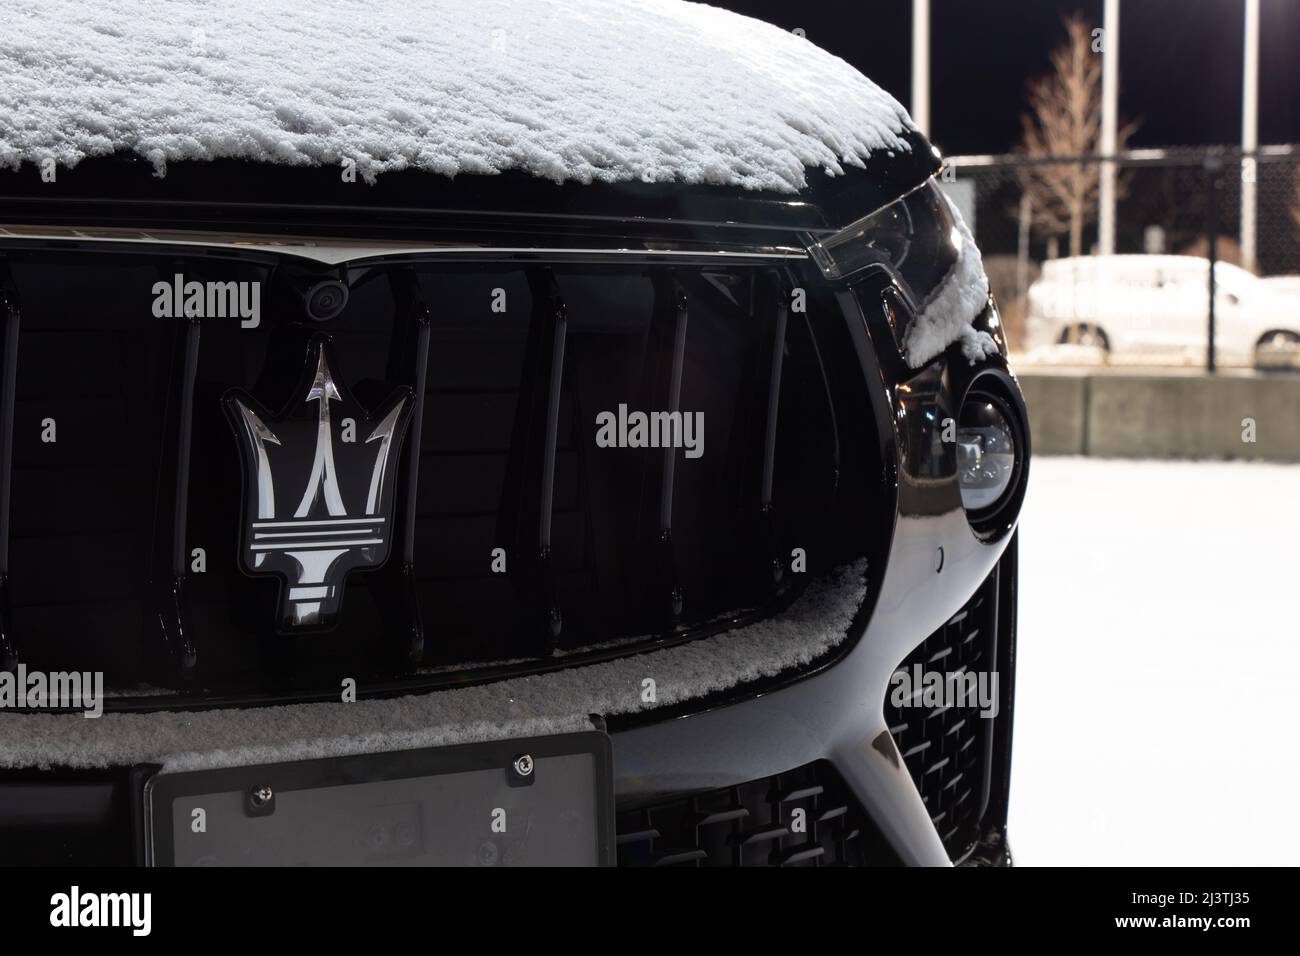 Maserati, un constructeur italien de véhicules de luxe, logo est vu sur la calandre avant d'une nouvelle voiture garée dans un concessionnaire. Banque D'Images